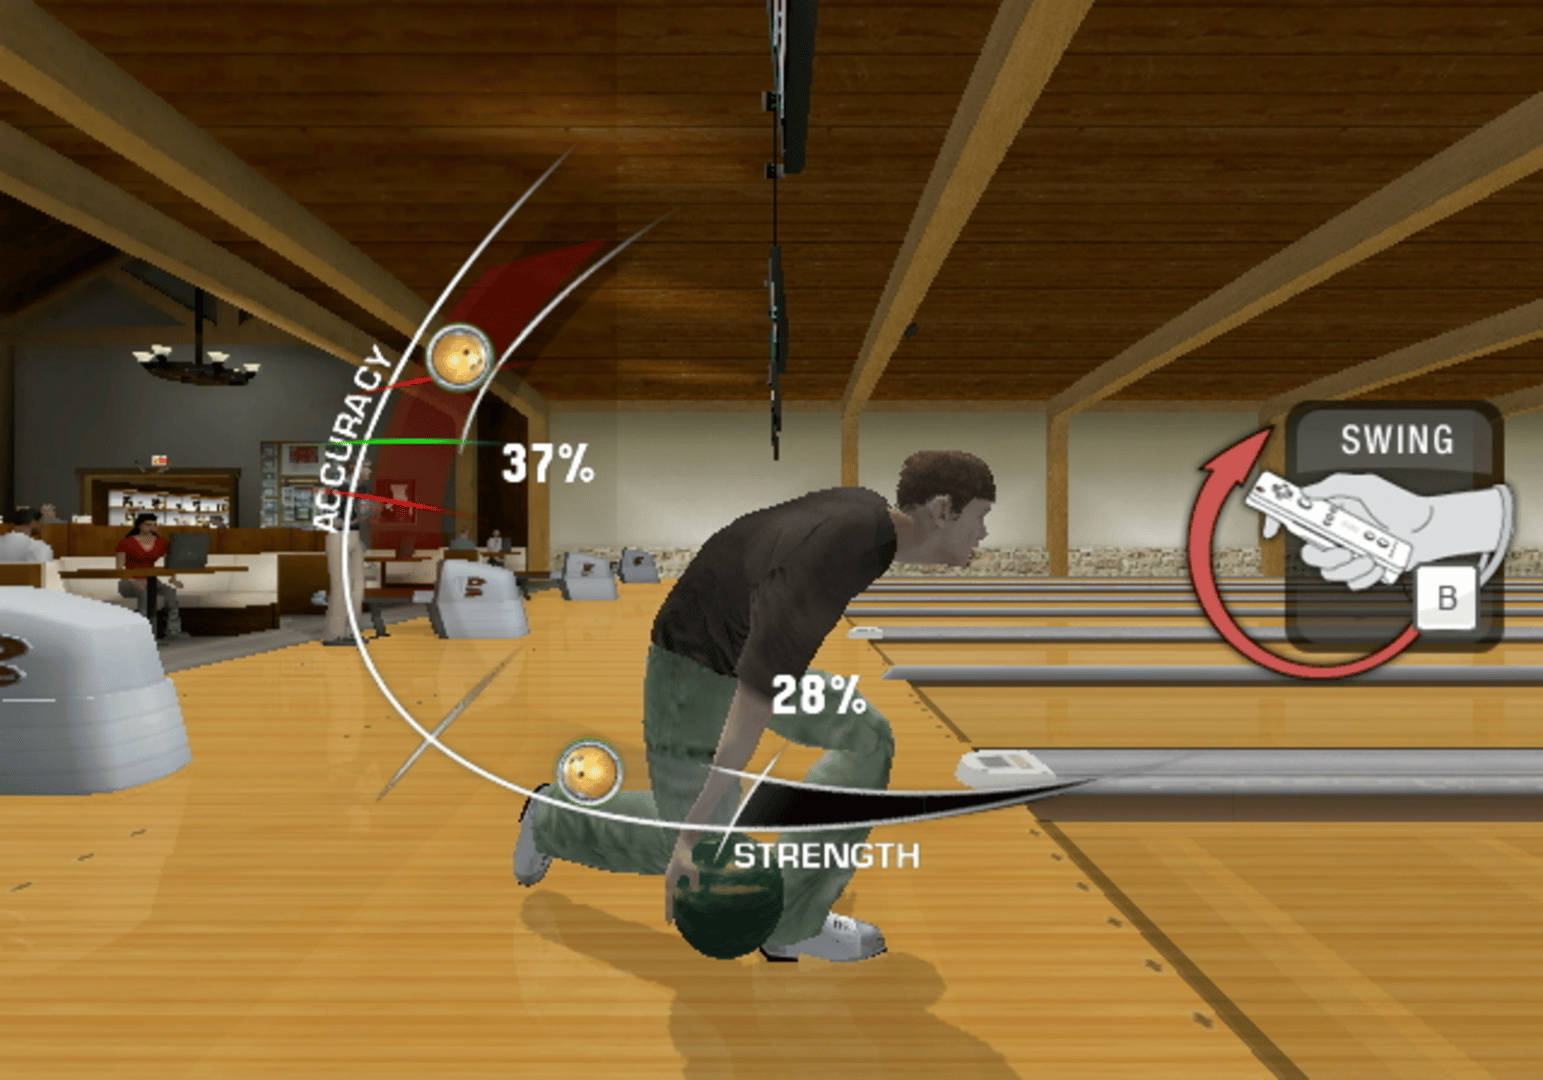 Brunswick Pro Bowling screenshot